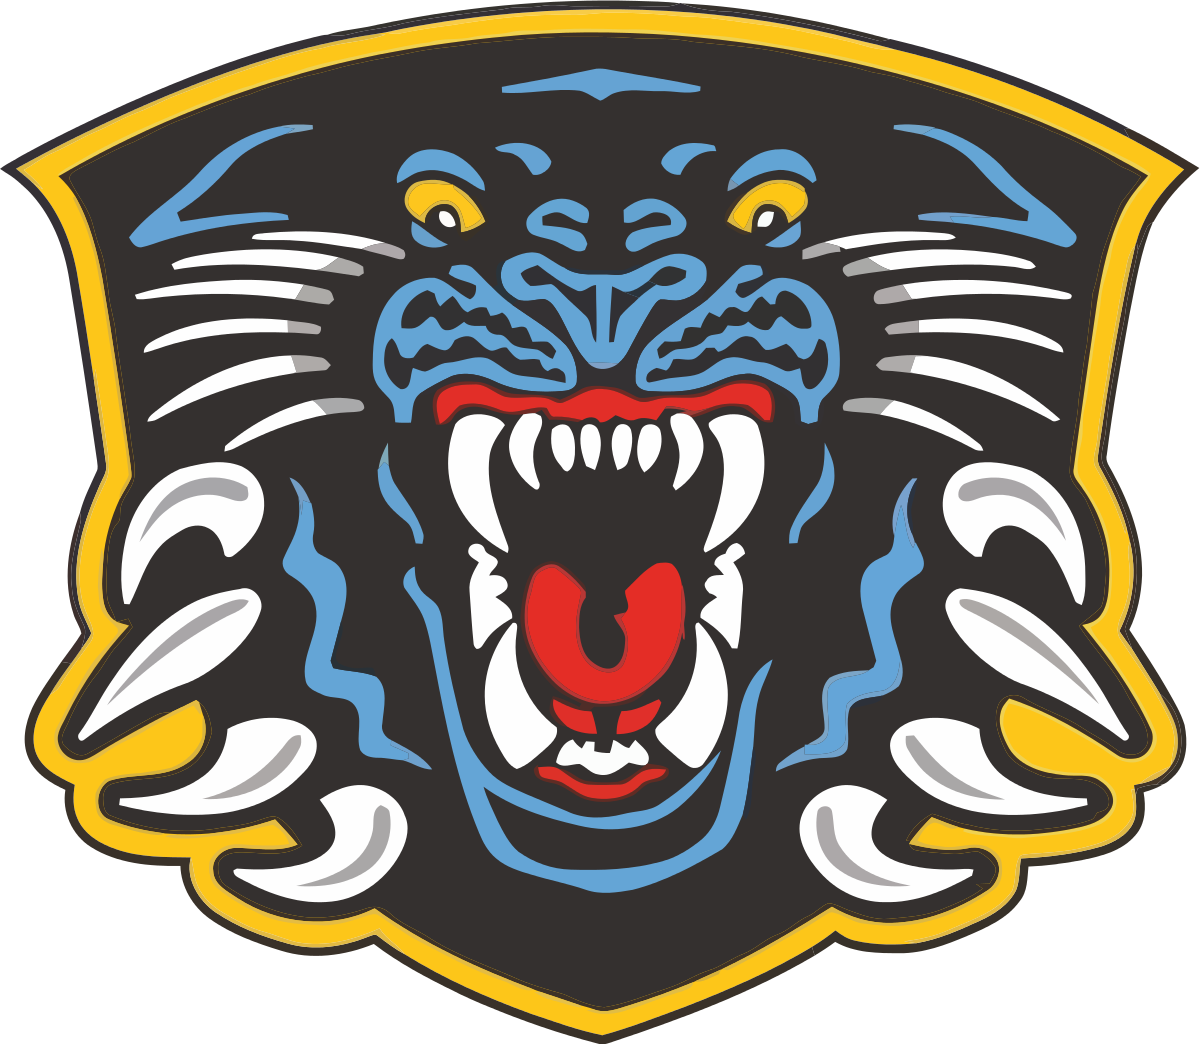 panthers logo download